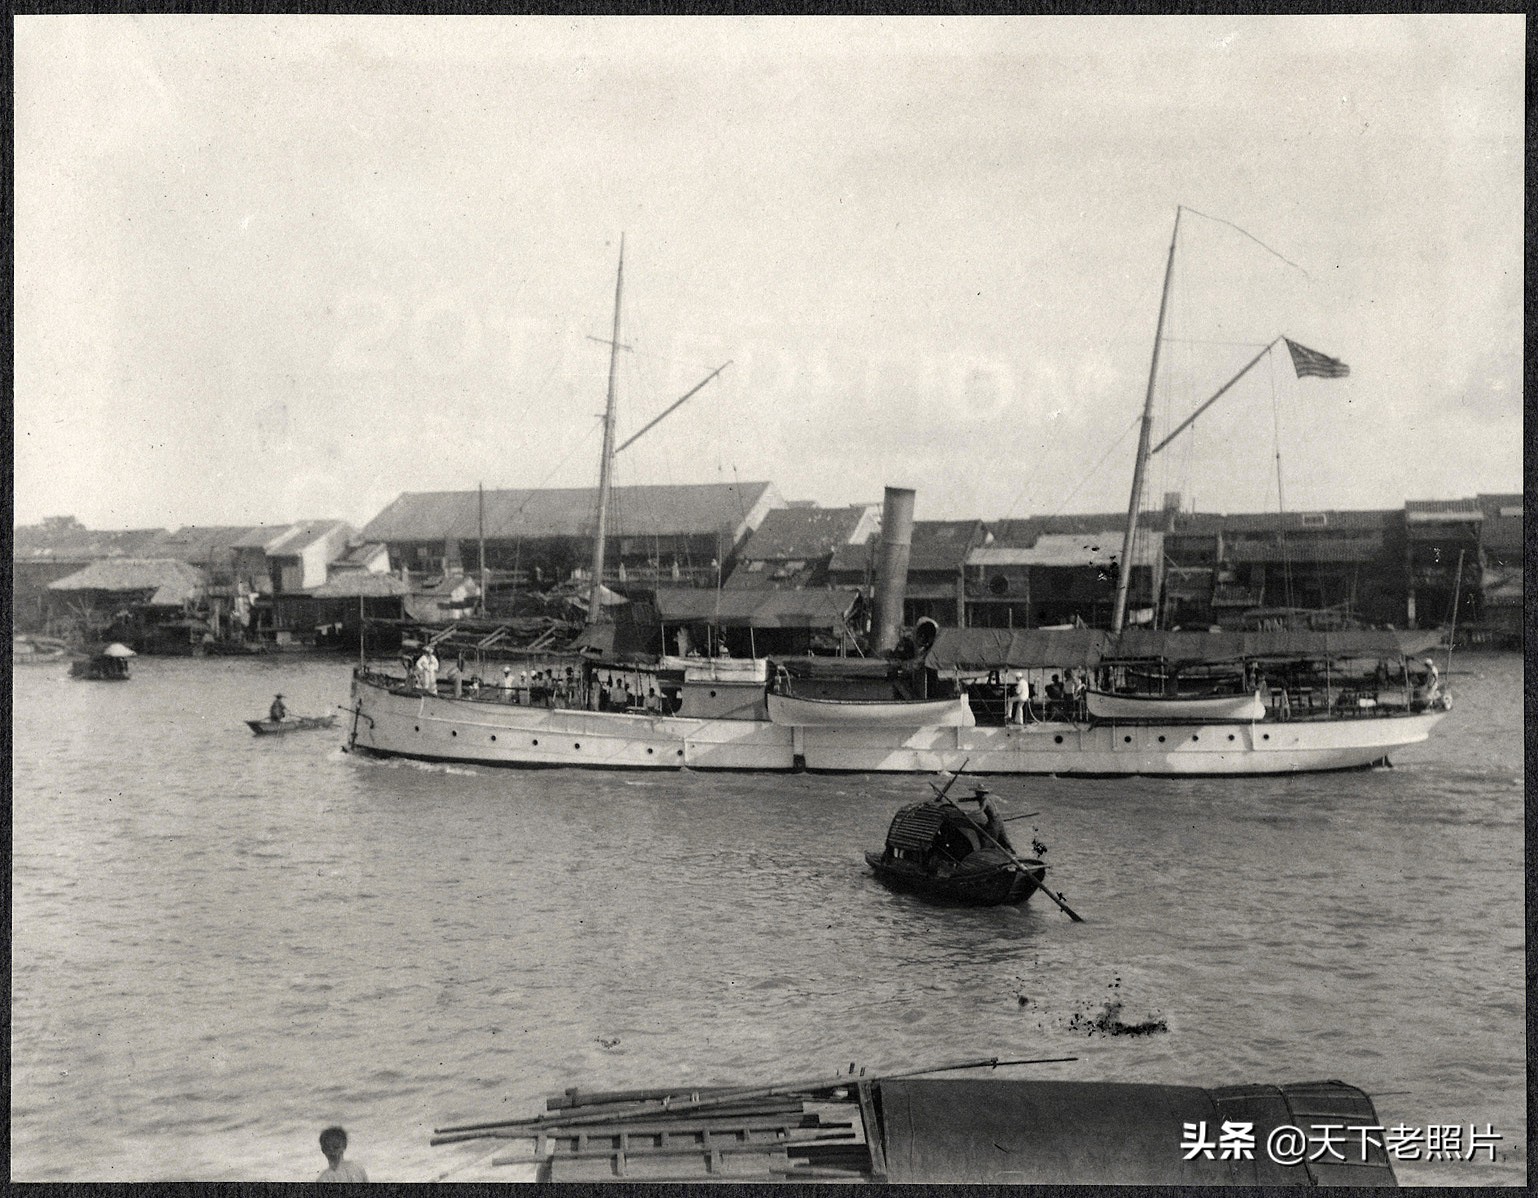 1905年的广州照 美国政府代表团访华时随行拍摄